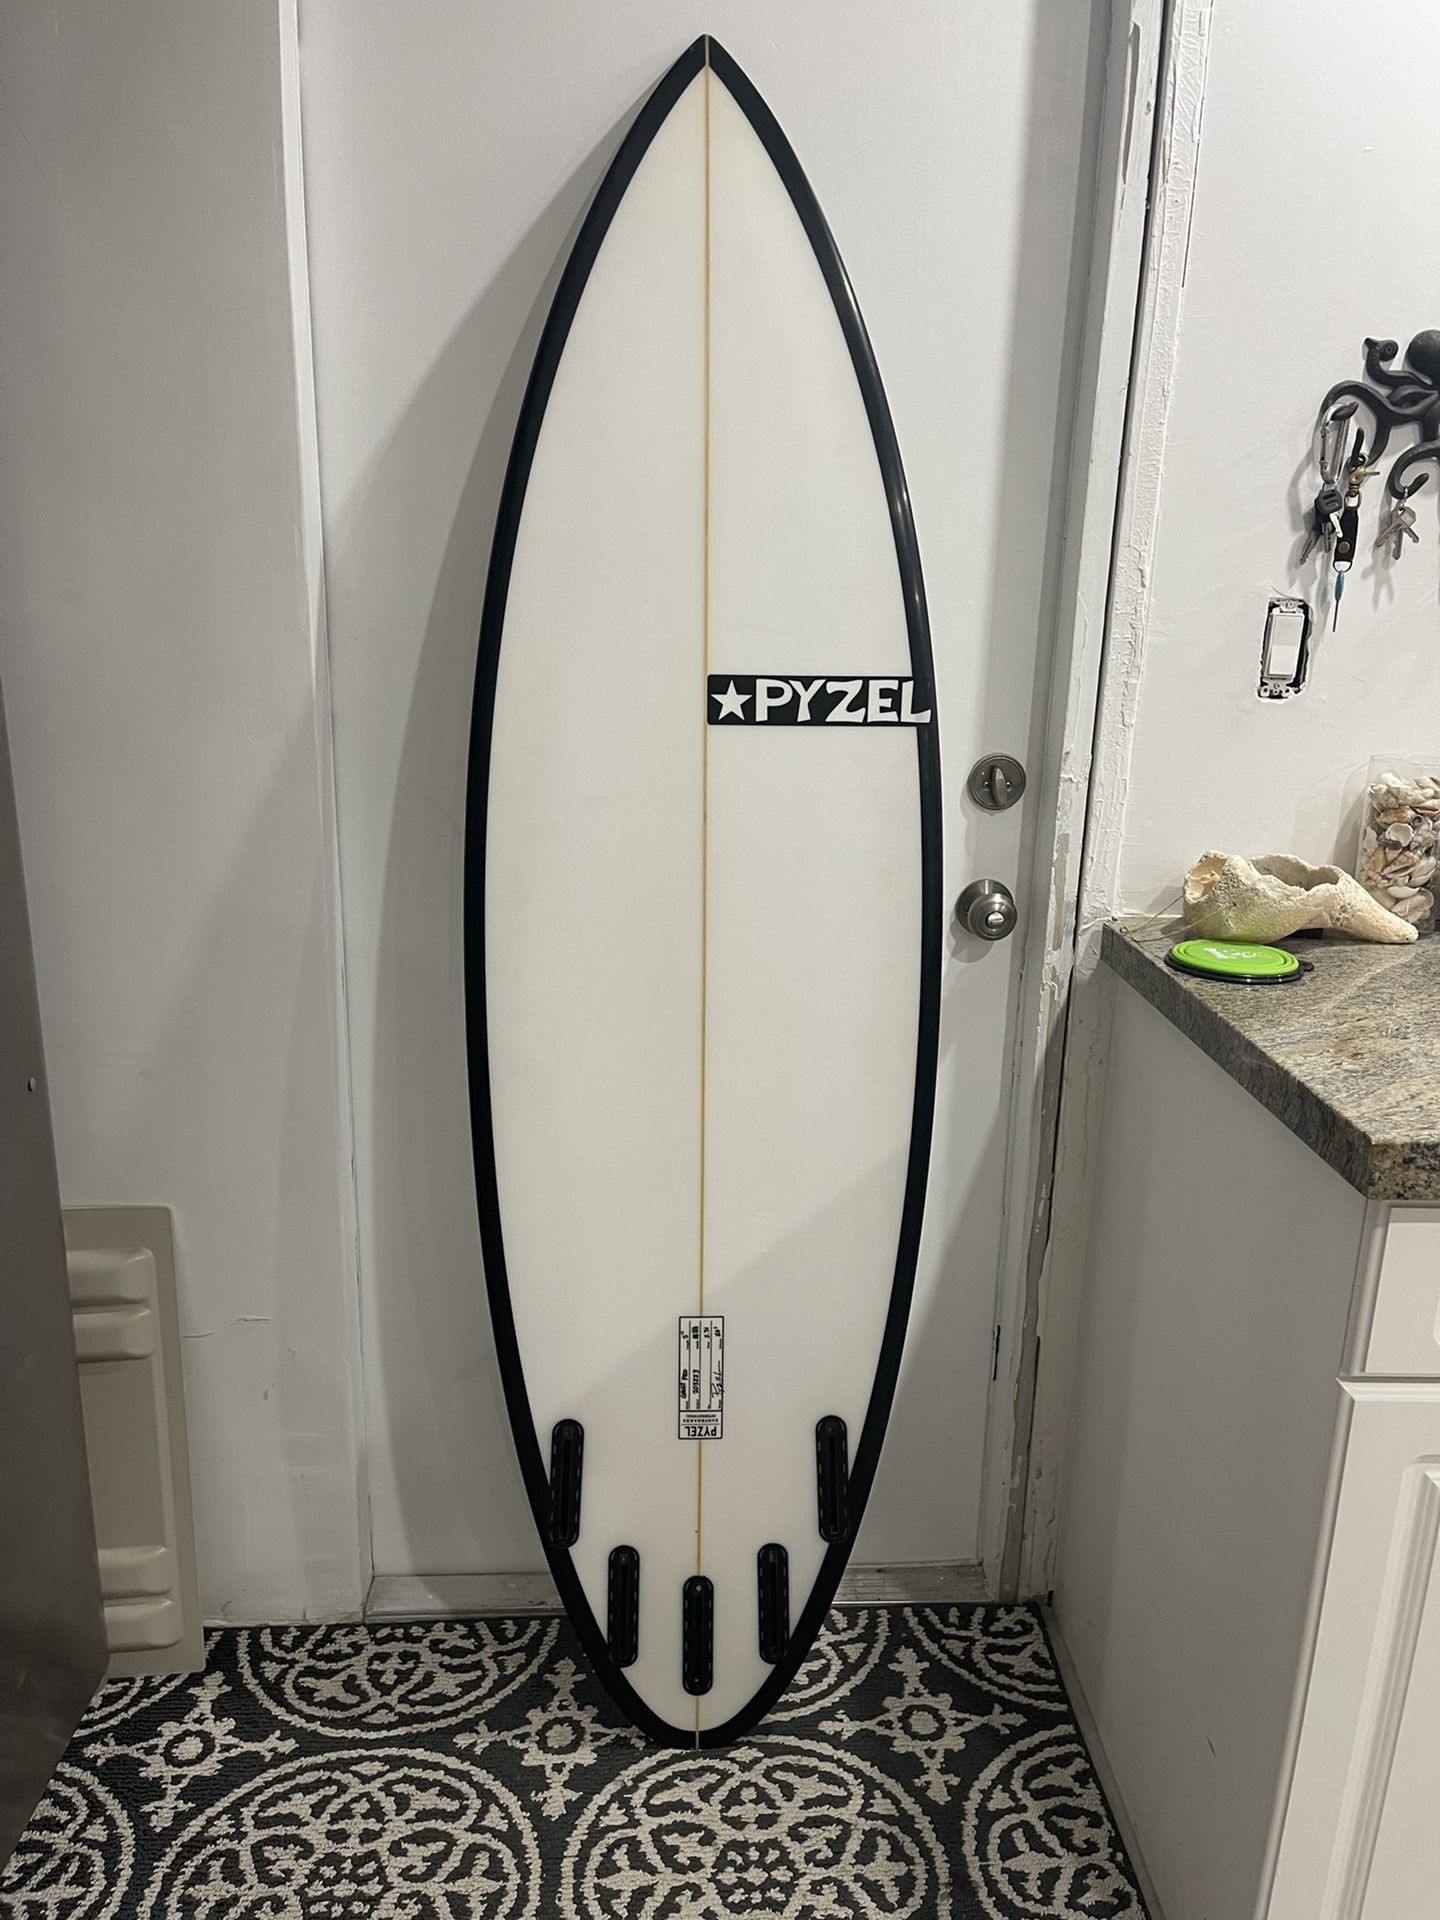 Surfboard Pyzel ghost 